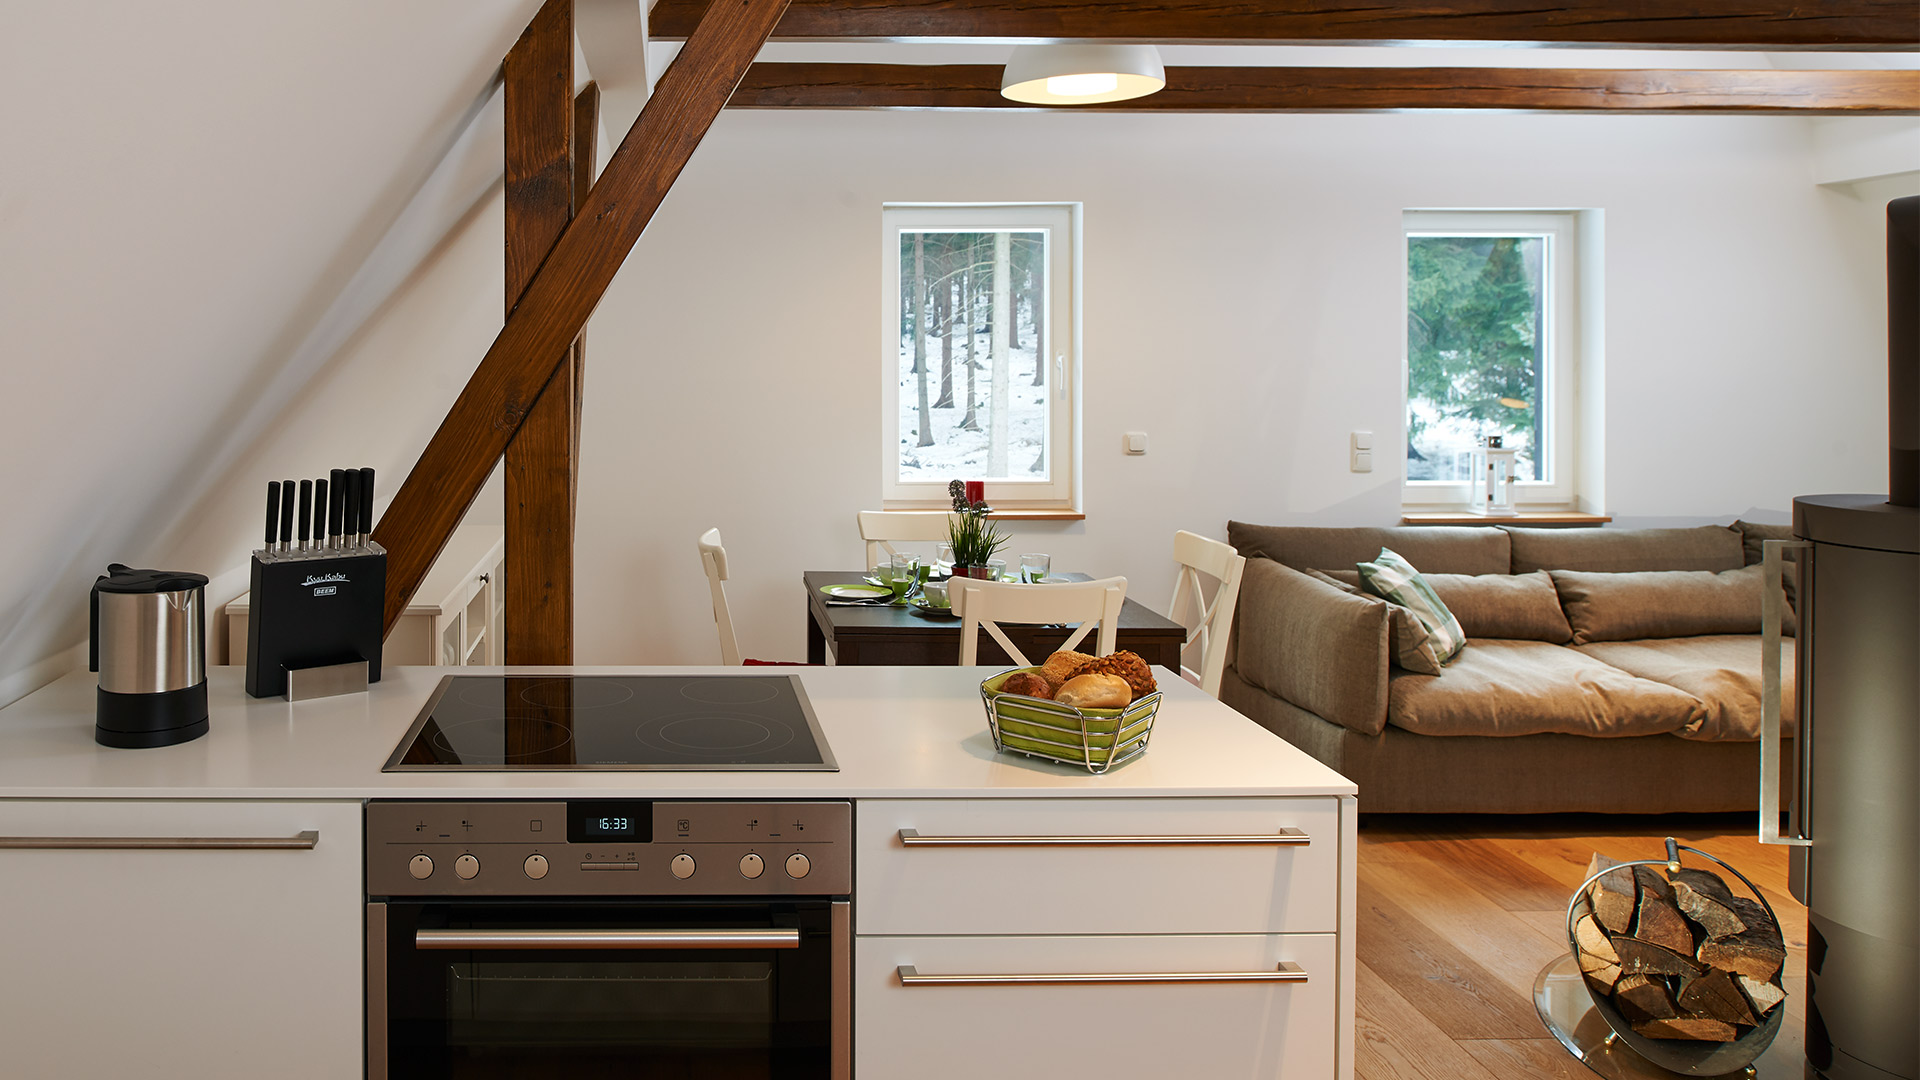 Die moderne Küche bietet einen schönen Kontrast zu den rustikalen Holzbalken im Obergeschoss.